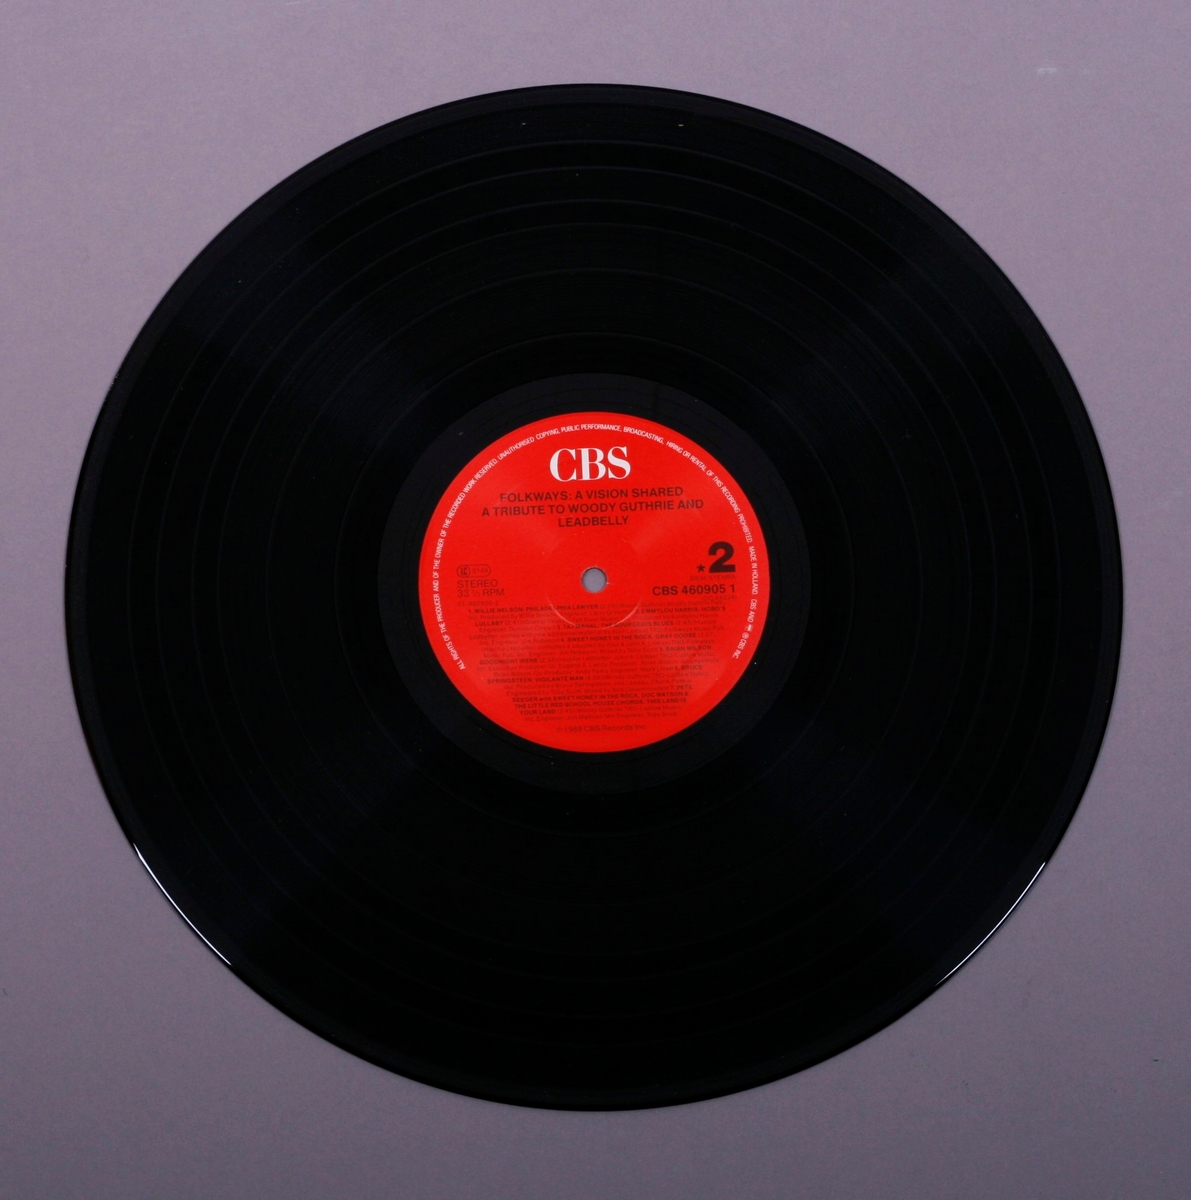 Grammofonplate i svart vinyl og dobbelt plateomslag i papp. Plata ligger i en papirlomme med tekst på.